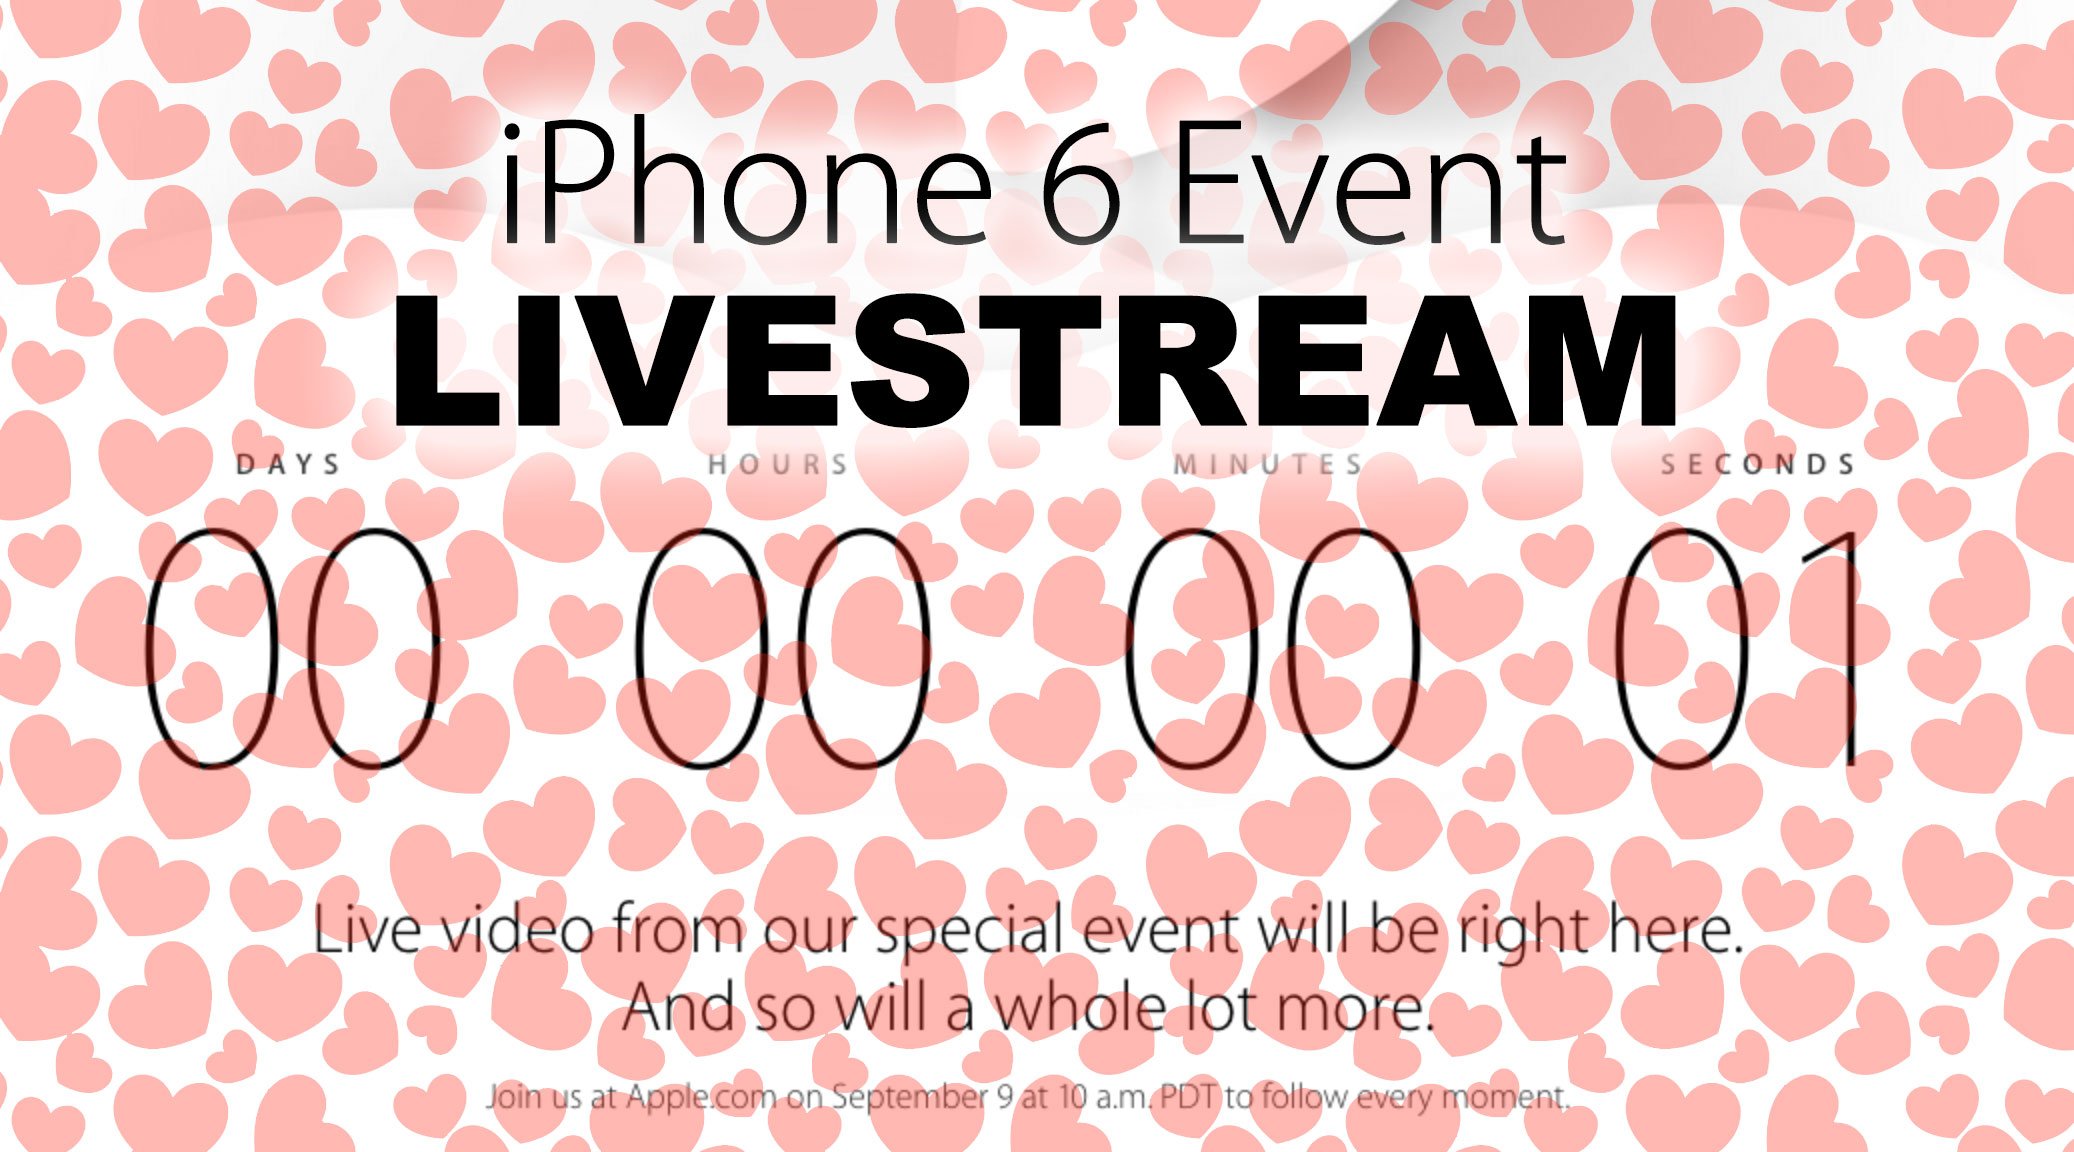 Livestream iPhone 6 Event: Apple kündigt Video Live-Stream an! 10